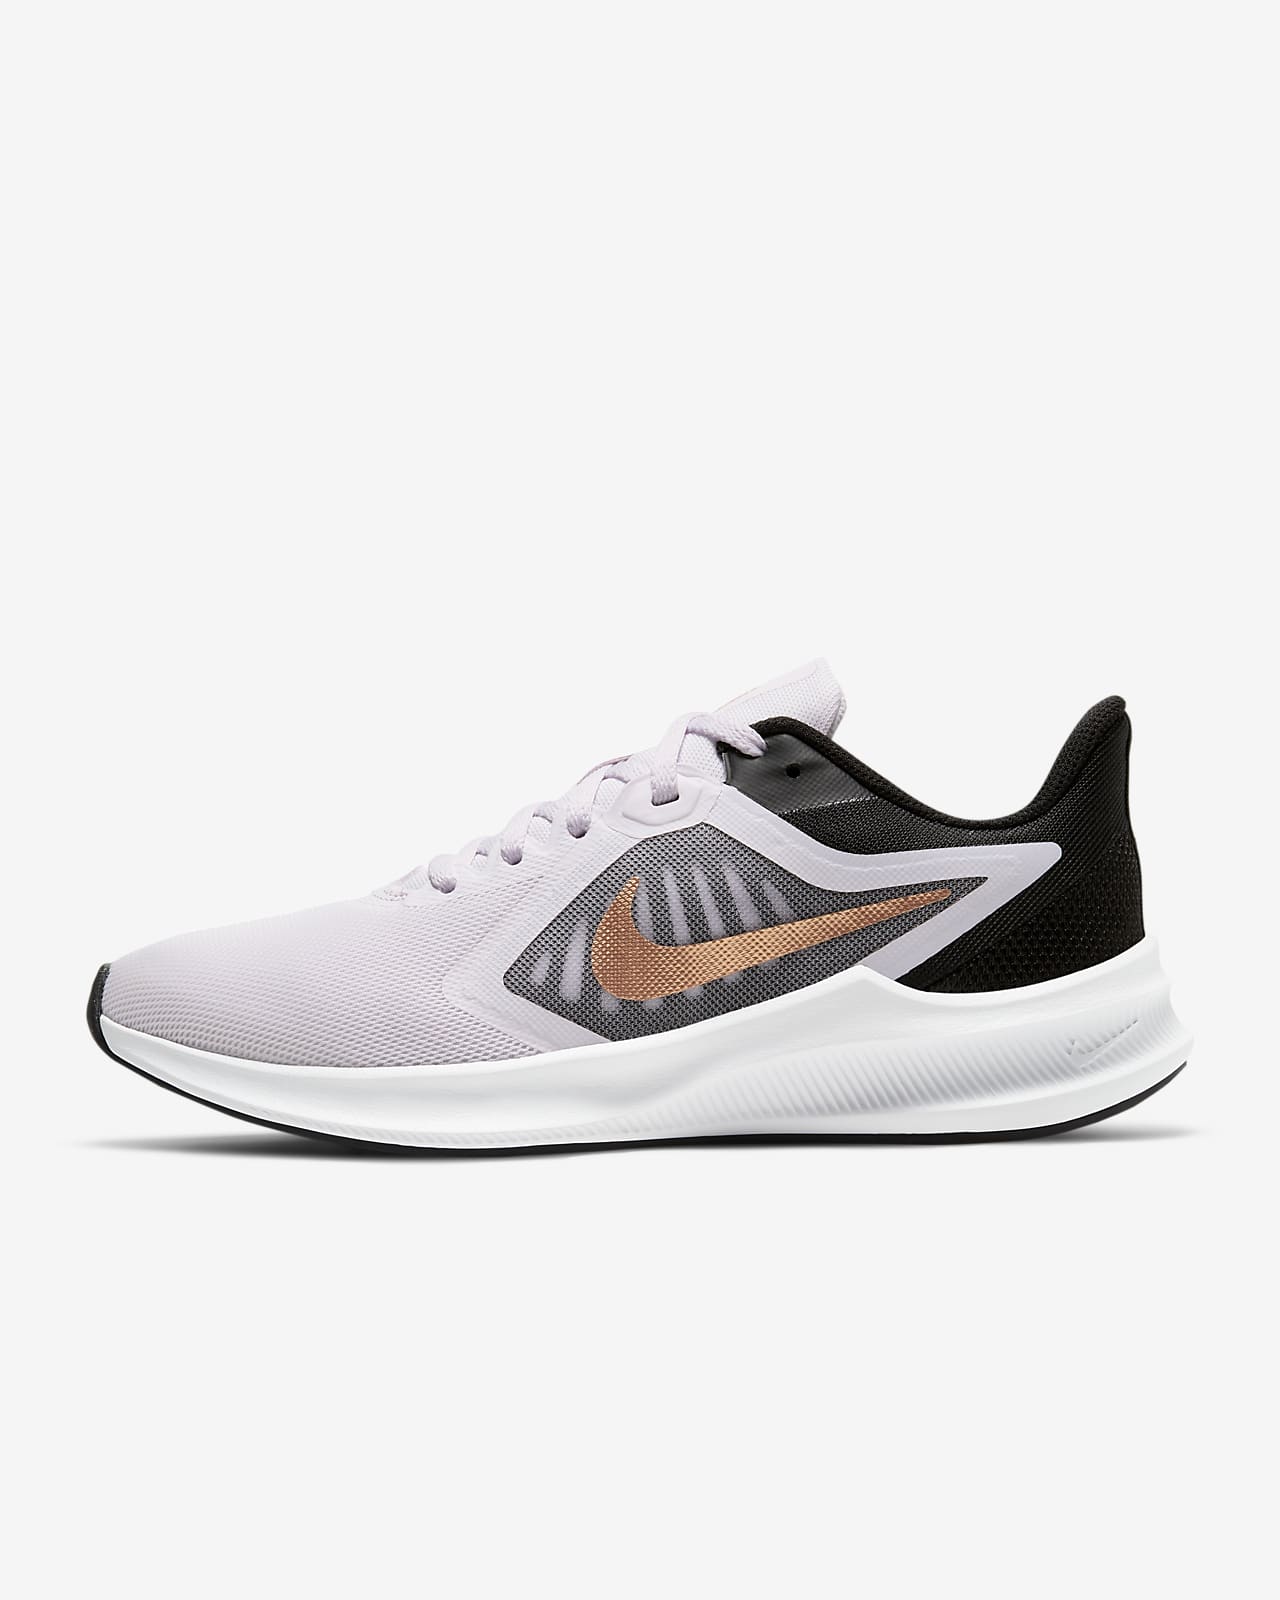 Running Shoe. Nike LU